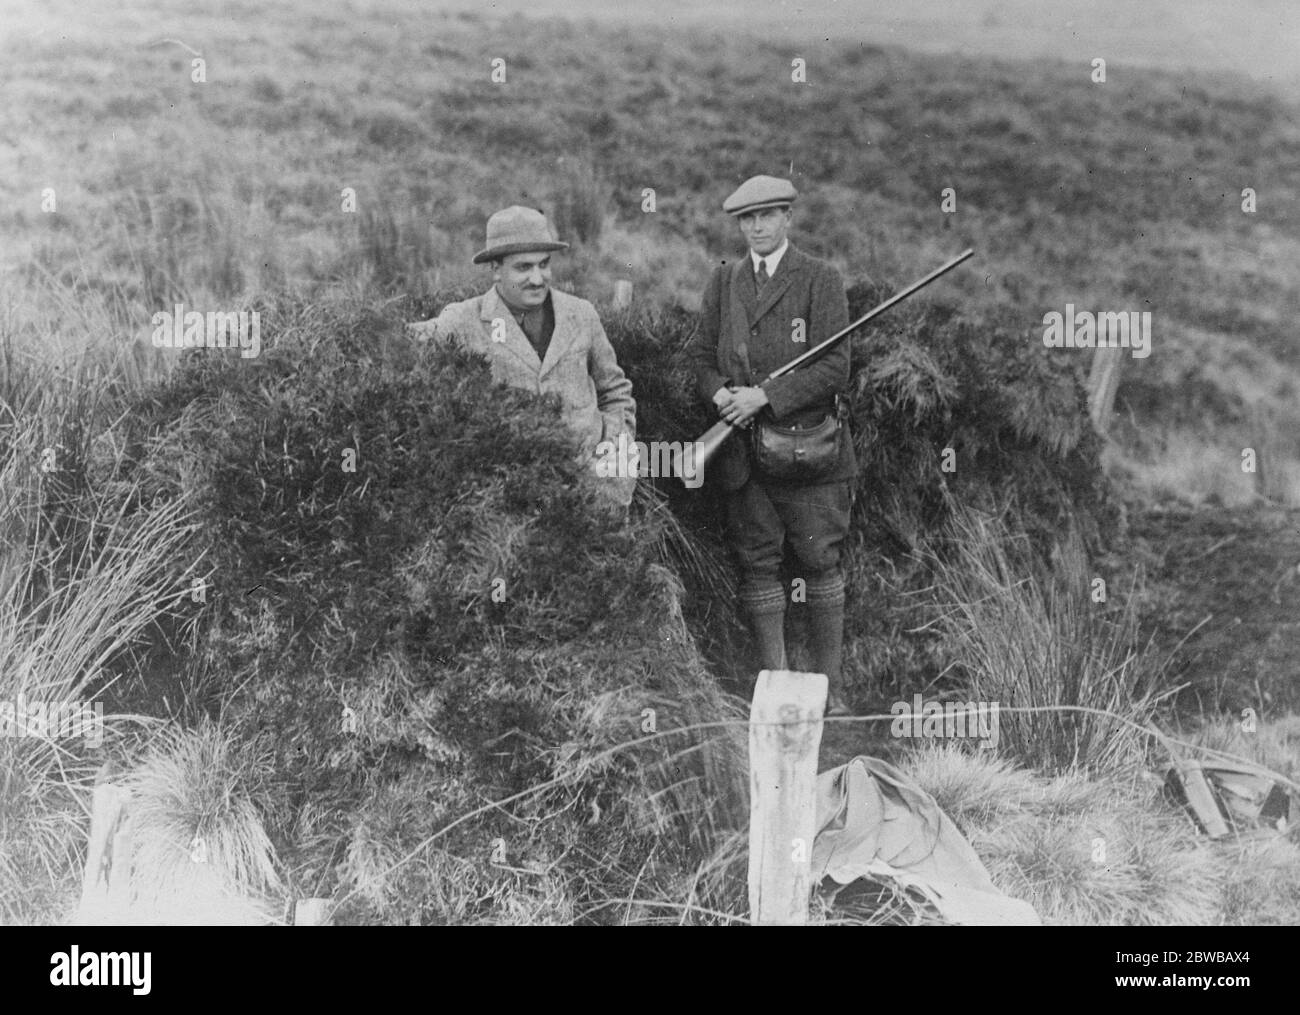 Sir Hari Singh in Scozia . Una fotografia finora inedita di Sir Hari Singh sparando sulle brughiere quando era inquilino di Douglas Castle , Lanarkshire , Scozia . 16 dicembre 1924 Foto Stock